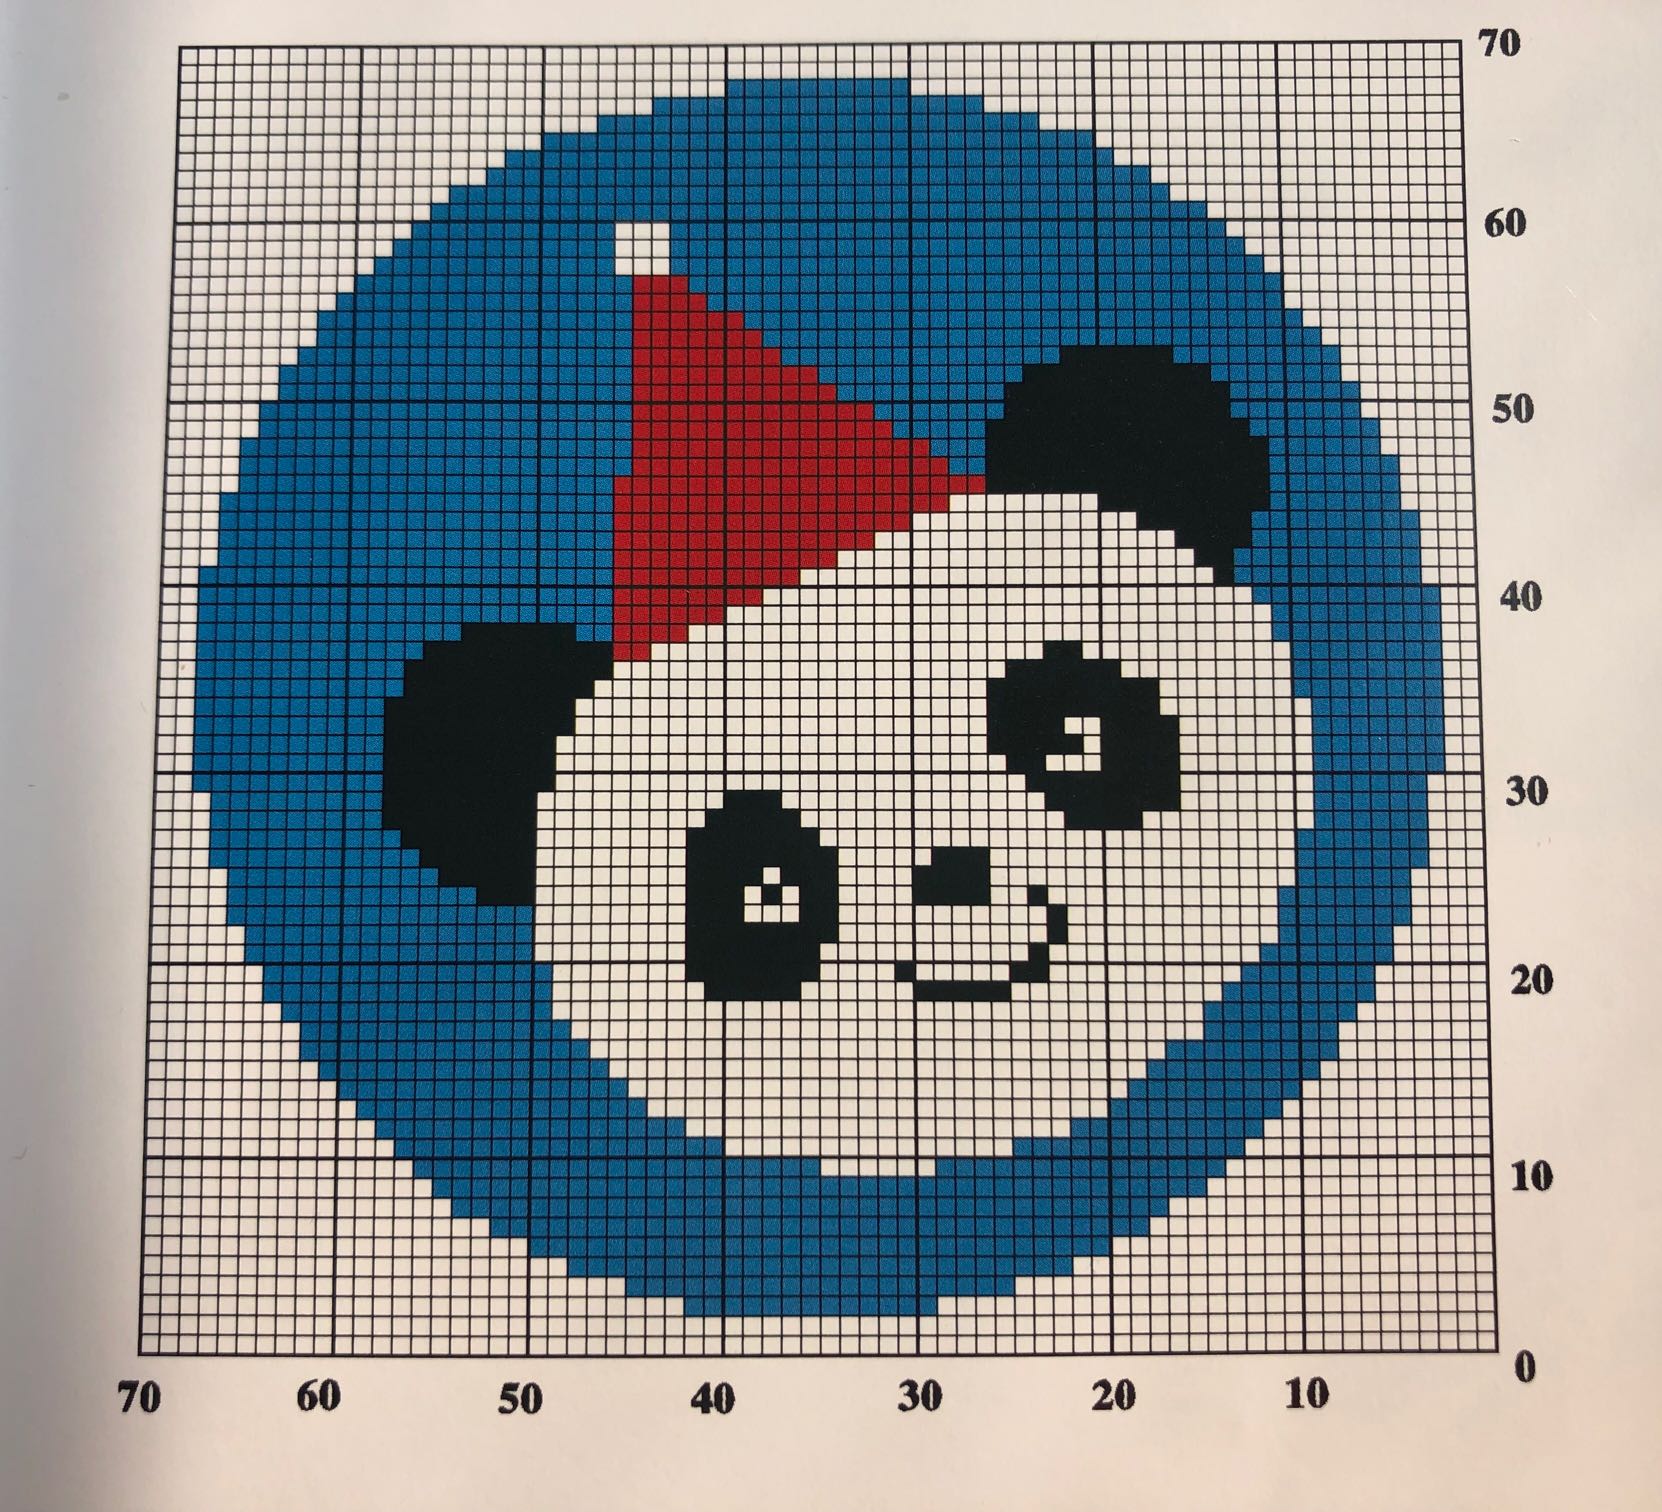 圣诞熊猫图案儿童棒针嵌花套头毛衣